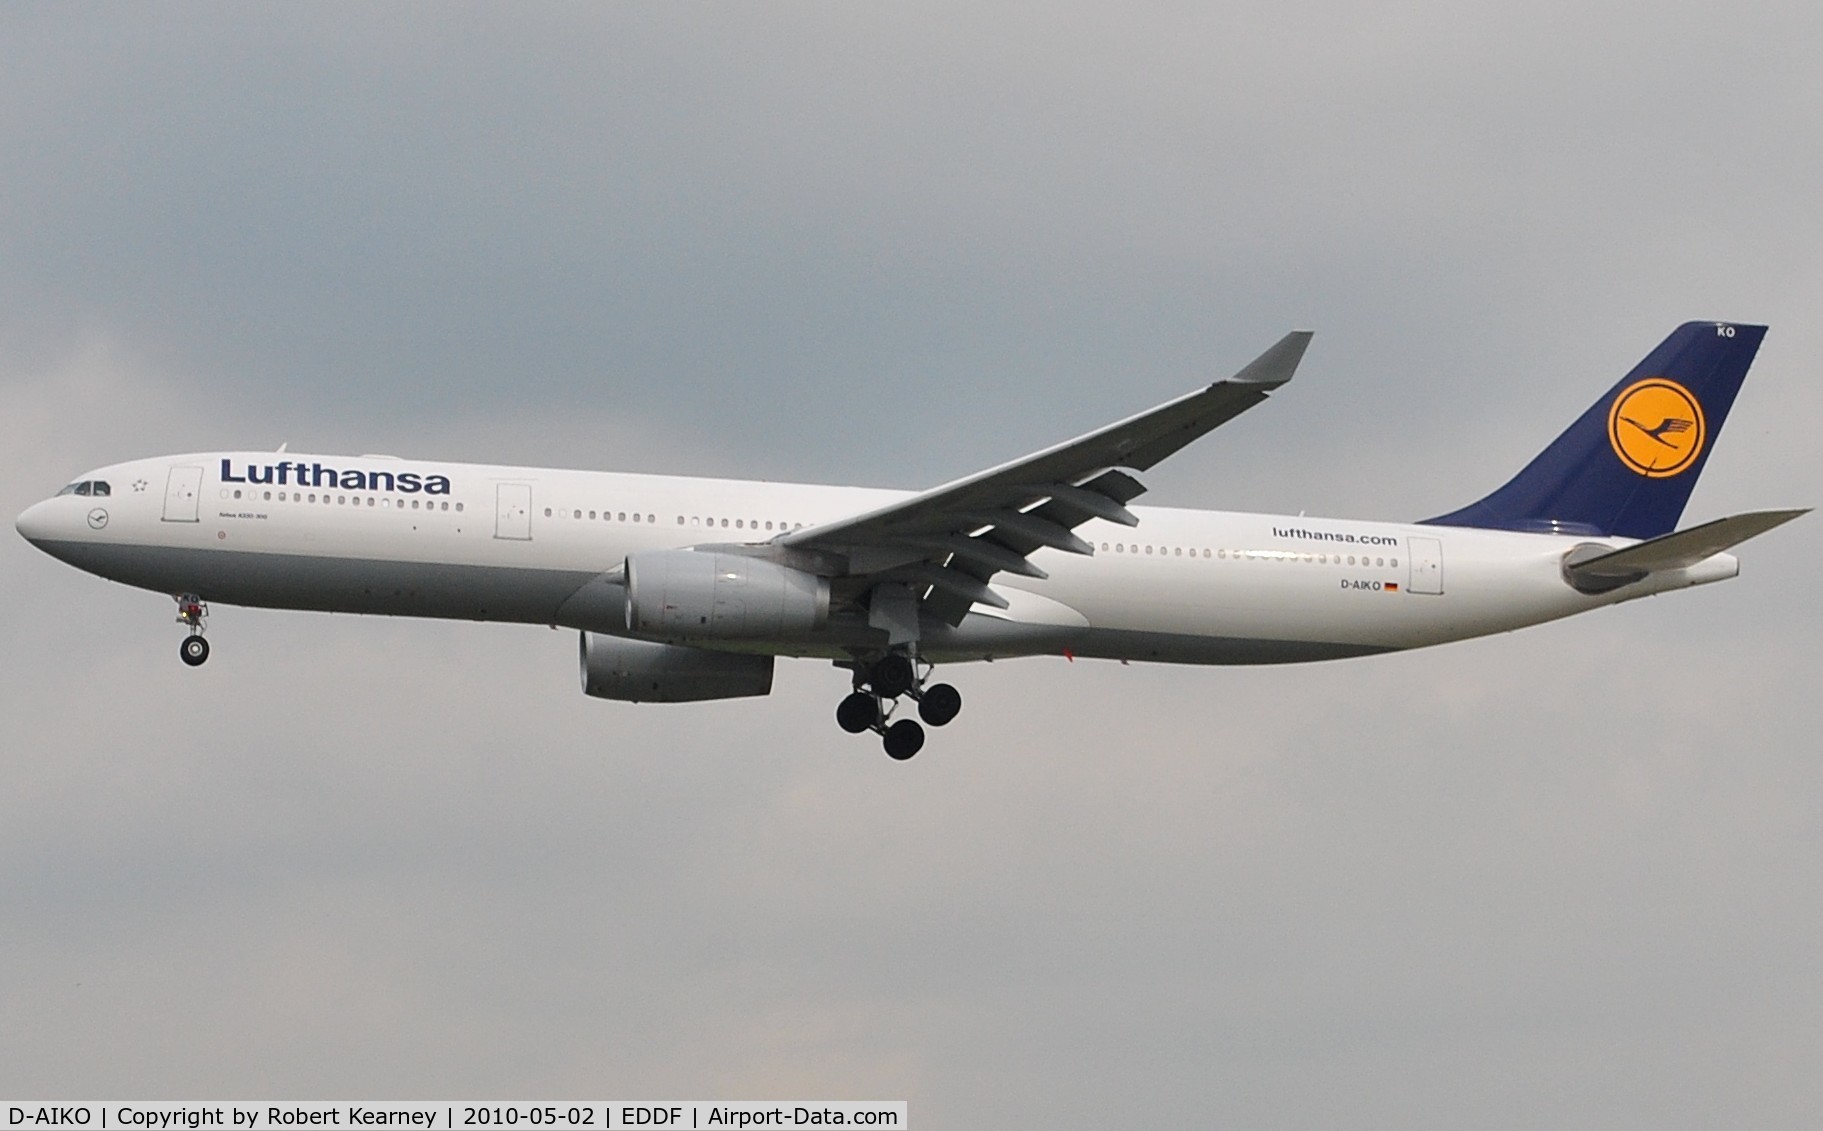 D-AIKO, 2009 Airbus A330-343X C/N 989, Lufthansa on short finals